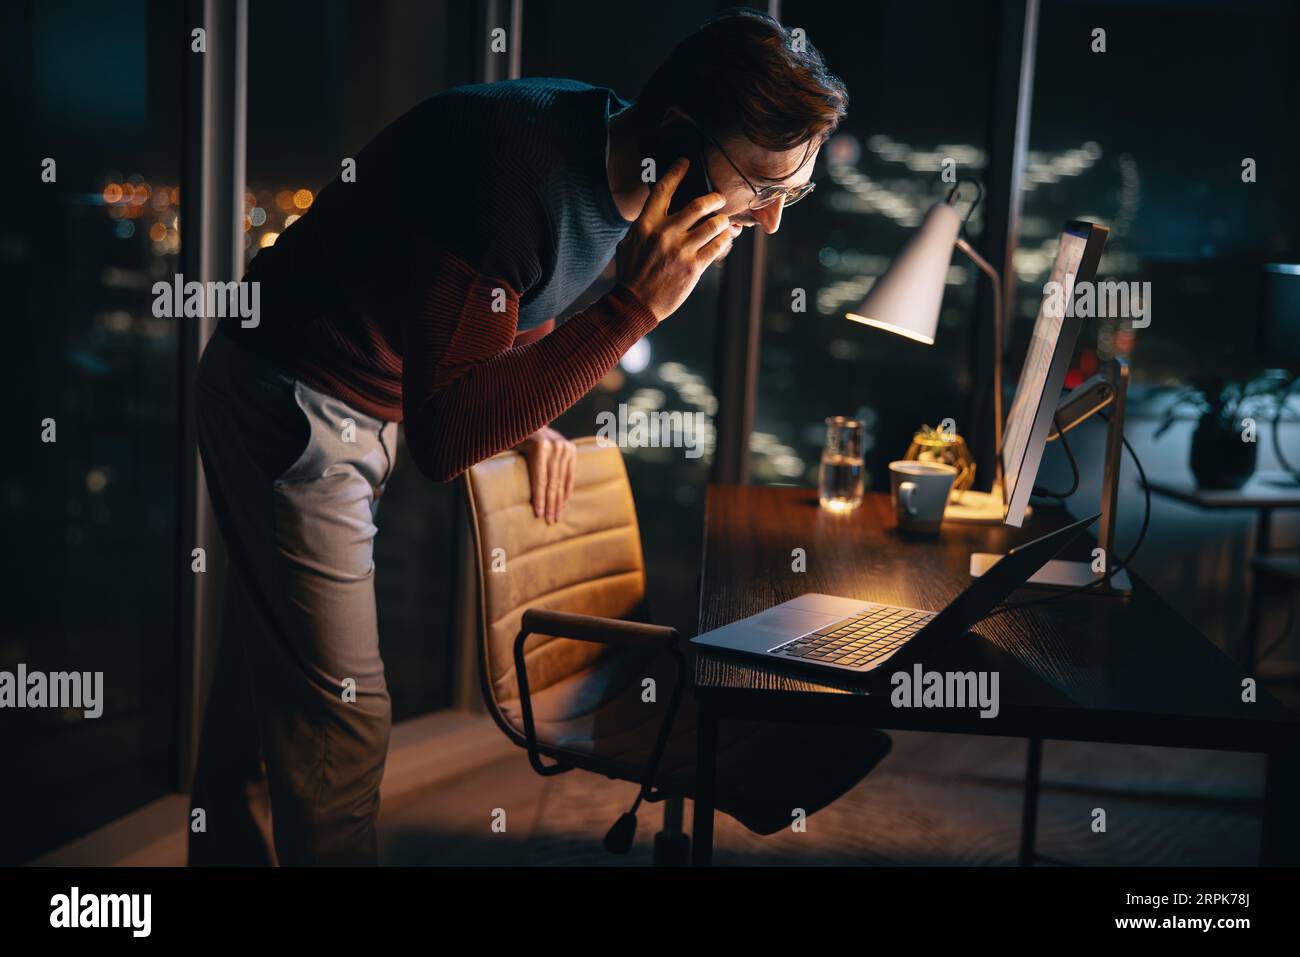 Un homme d'affaires travaillant tard le soir dans un bureau. Il discute d'un projet au cours d'un appel téléphonique tout en utilisant un ordinateur portable et un téléphone portable. Dédié Banque D'Images